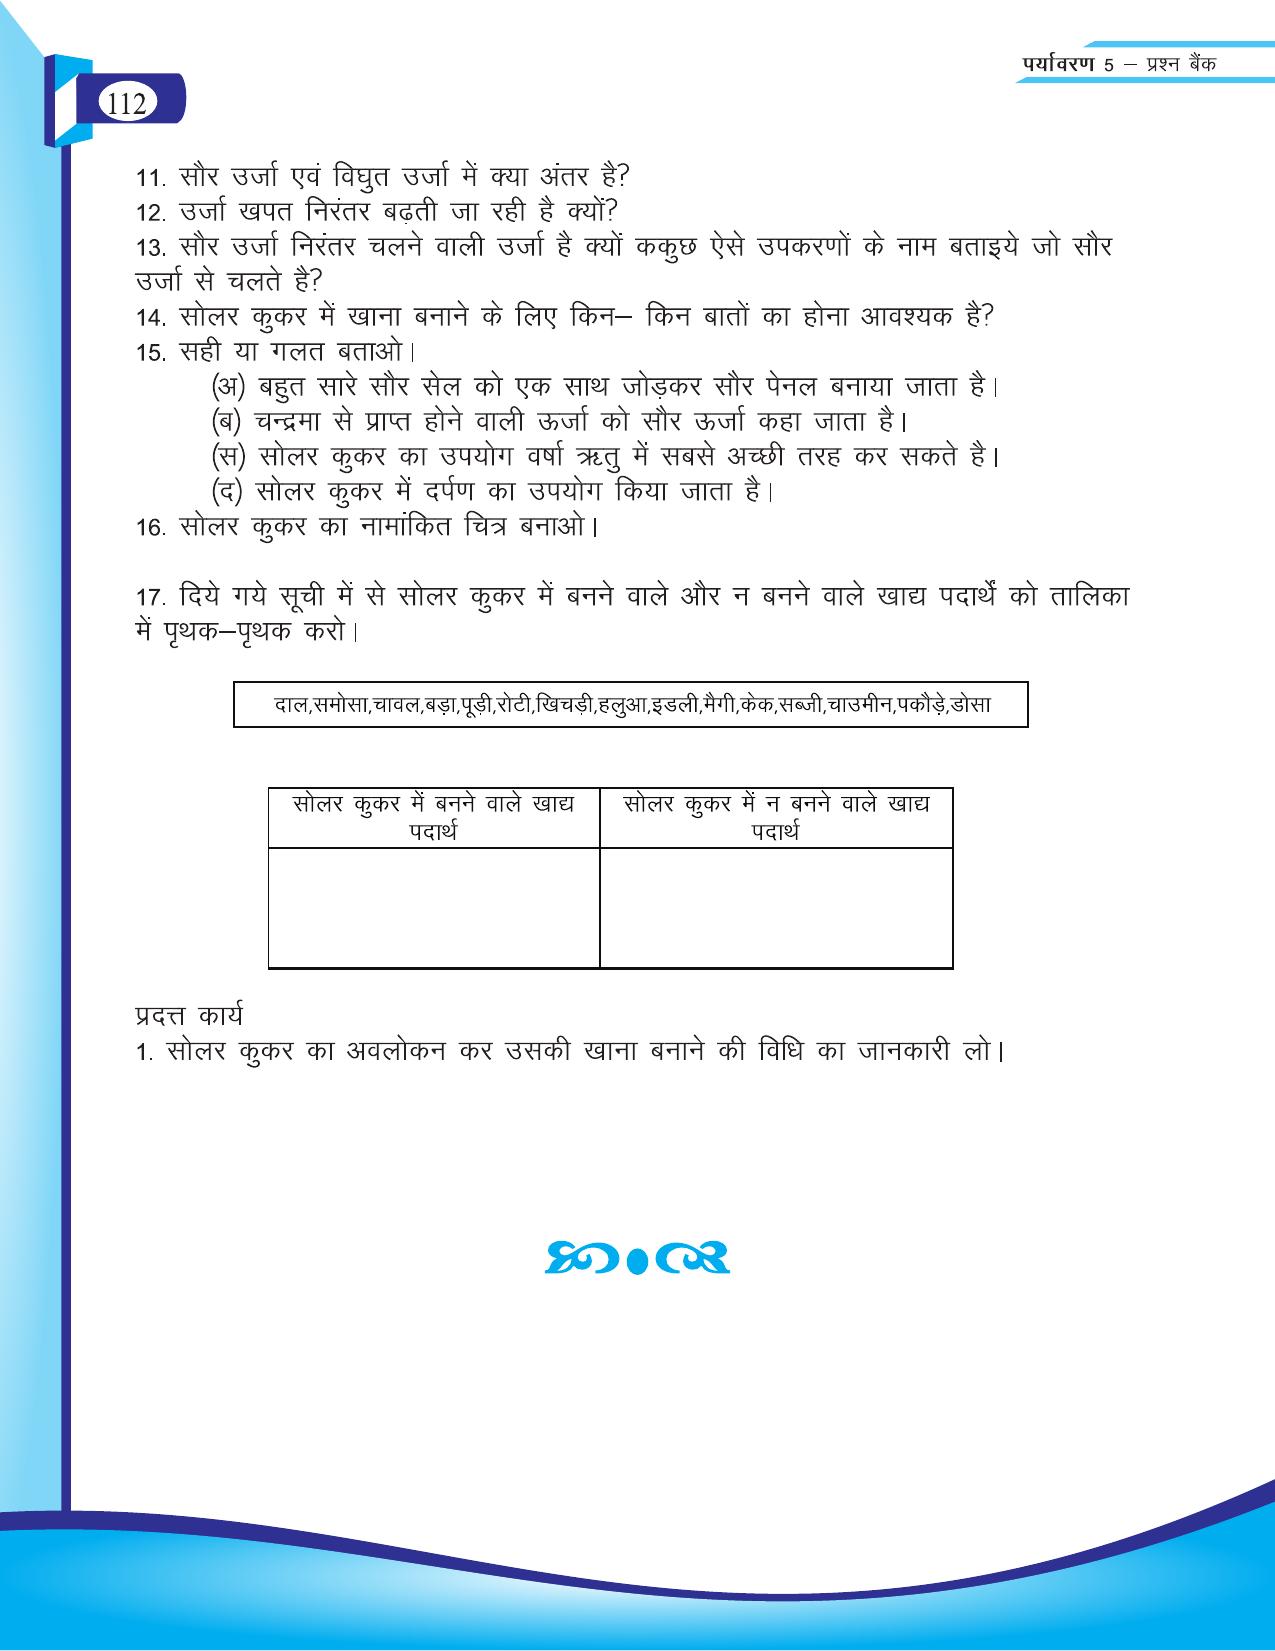 Chhattisgarh Board Class 5 EVS Question Bank 2015-16 - Page 38